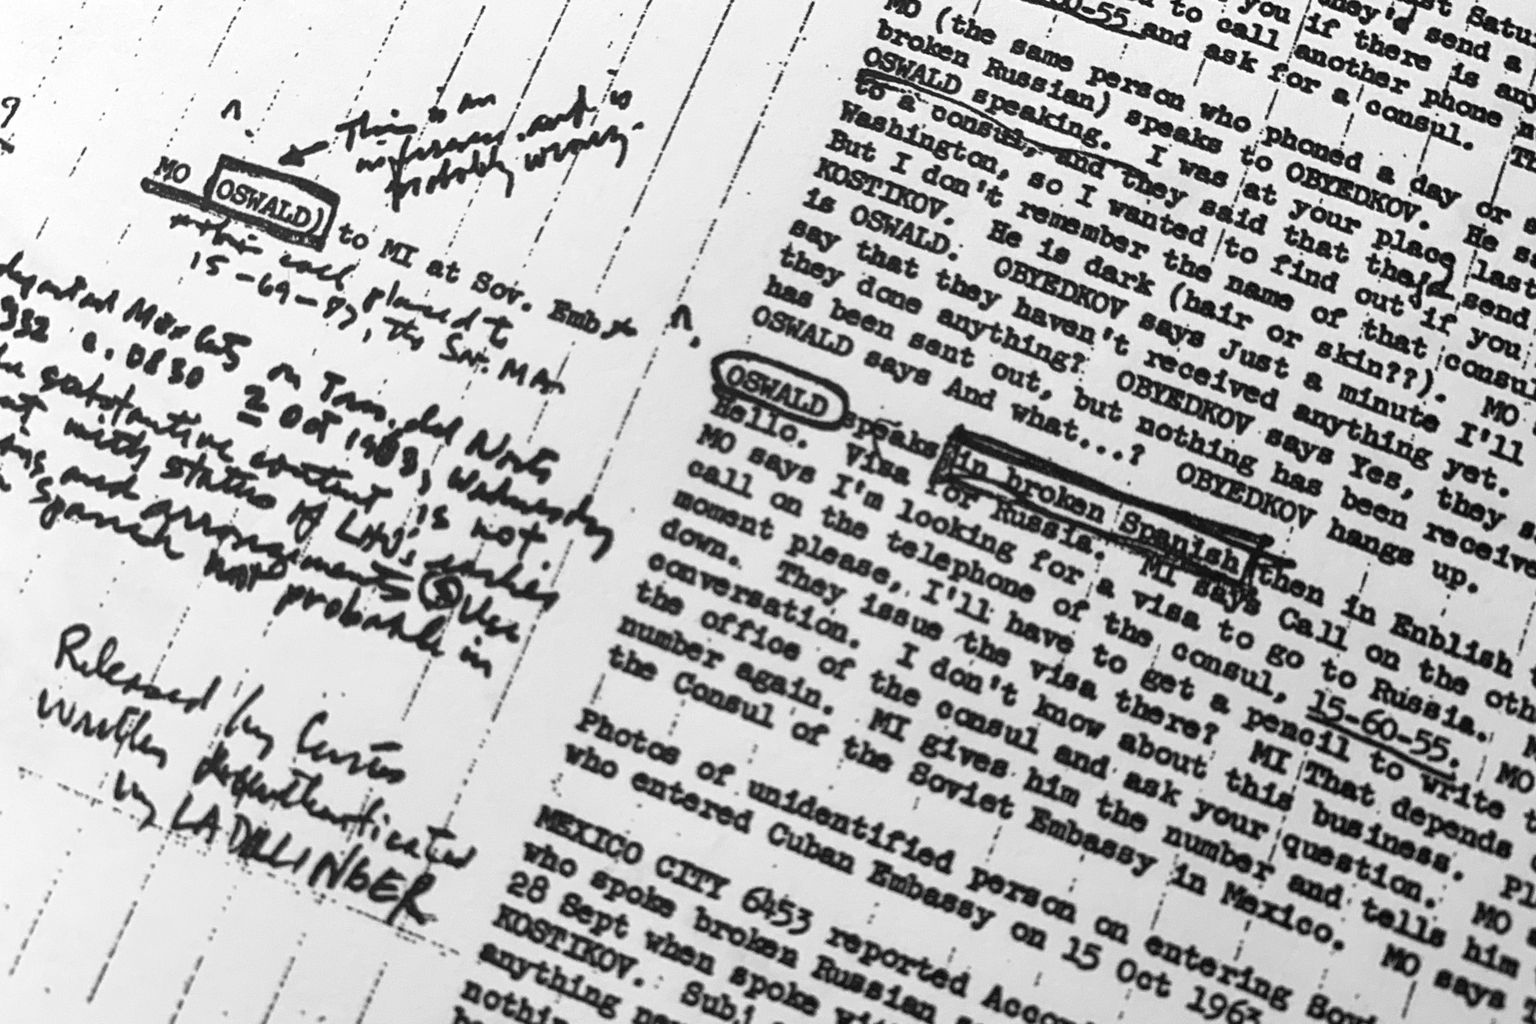 USA Luure Keskagentuuri (CIA) dokument 3. veebruarist 1968, milles kirjeldatakse Lee Harvey Oswaldi reisi Mehhikosse, kus ta võttis ühendust Nõukogude Liidu saatkonnaga